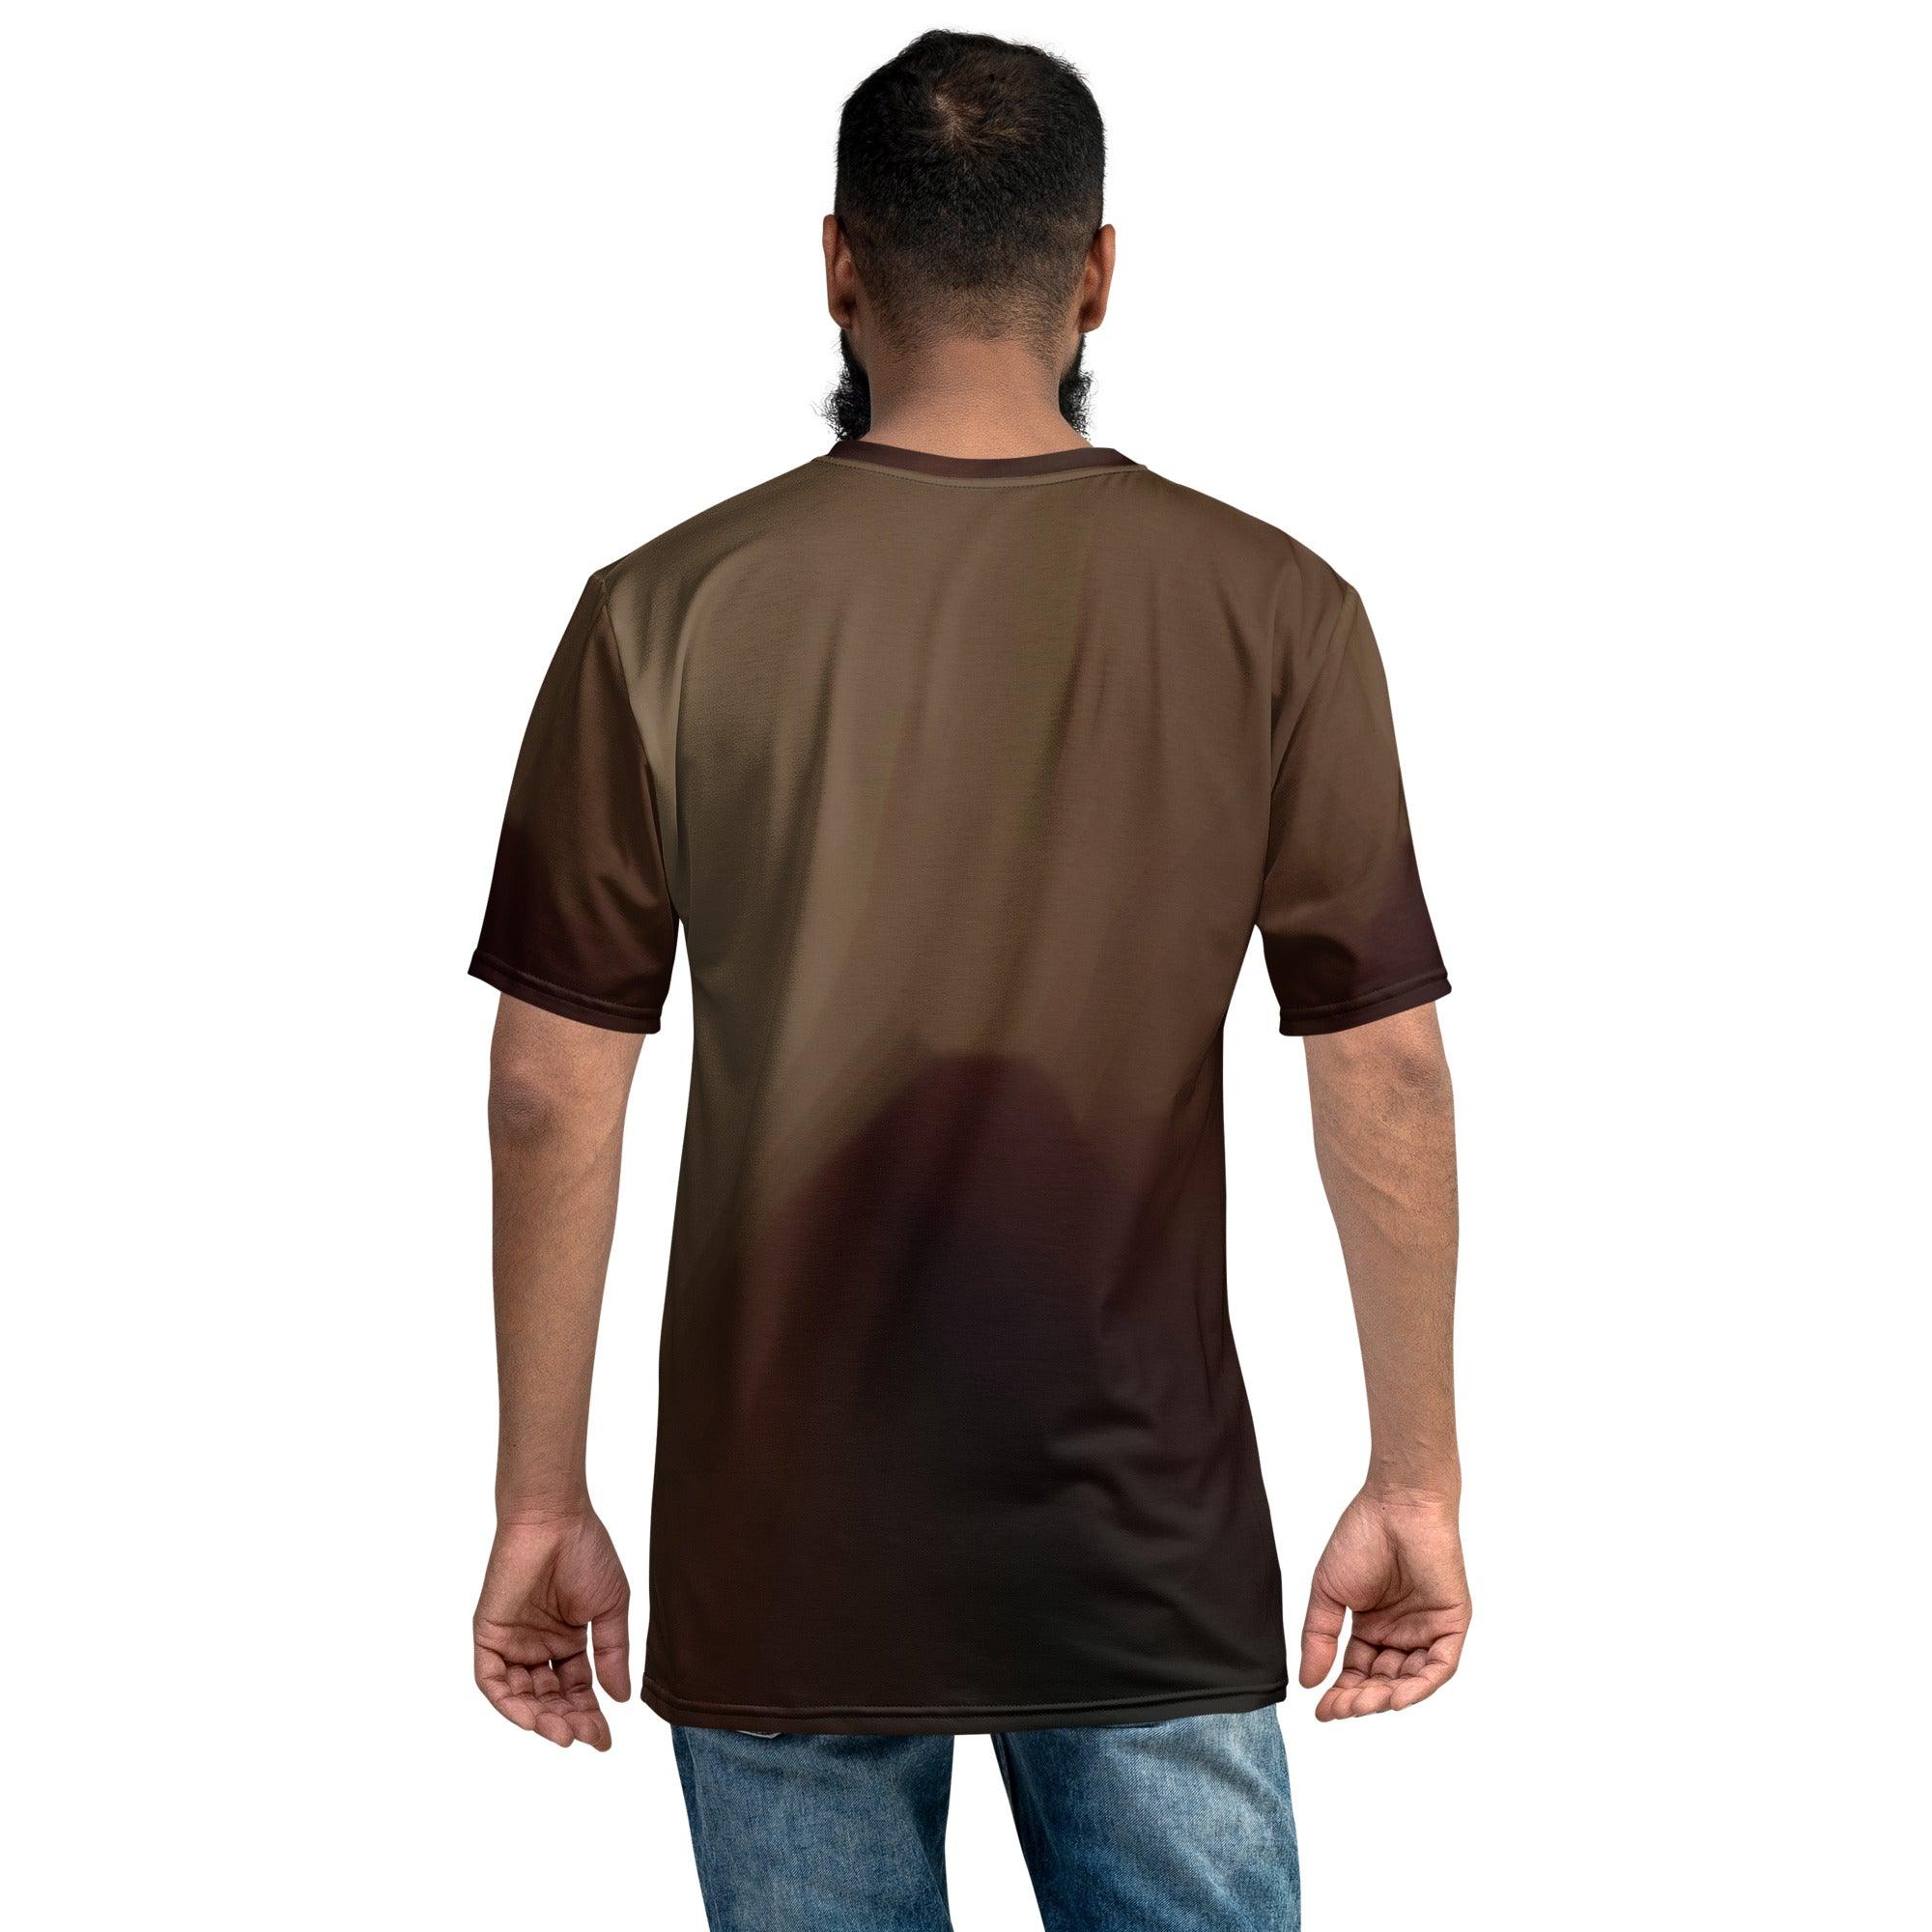 Golden Horizon Men's T-Shirt - Beyond T-shirts